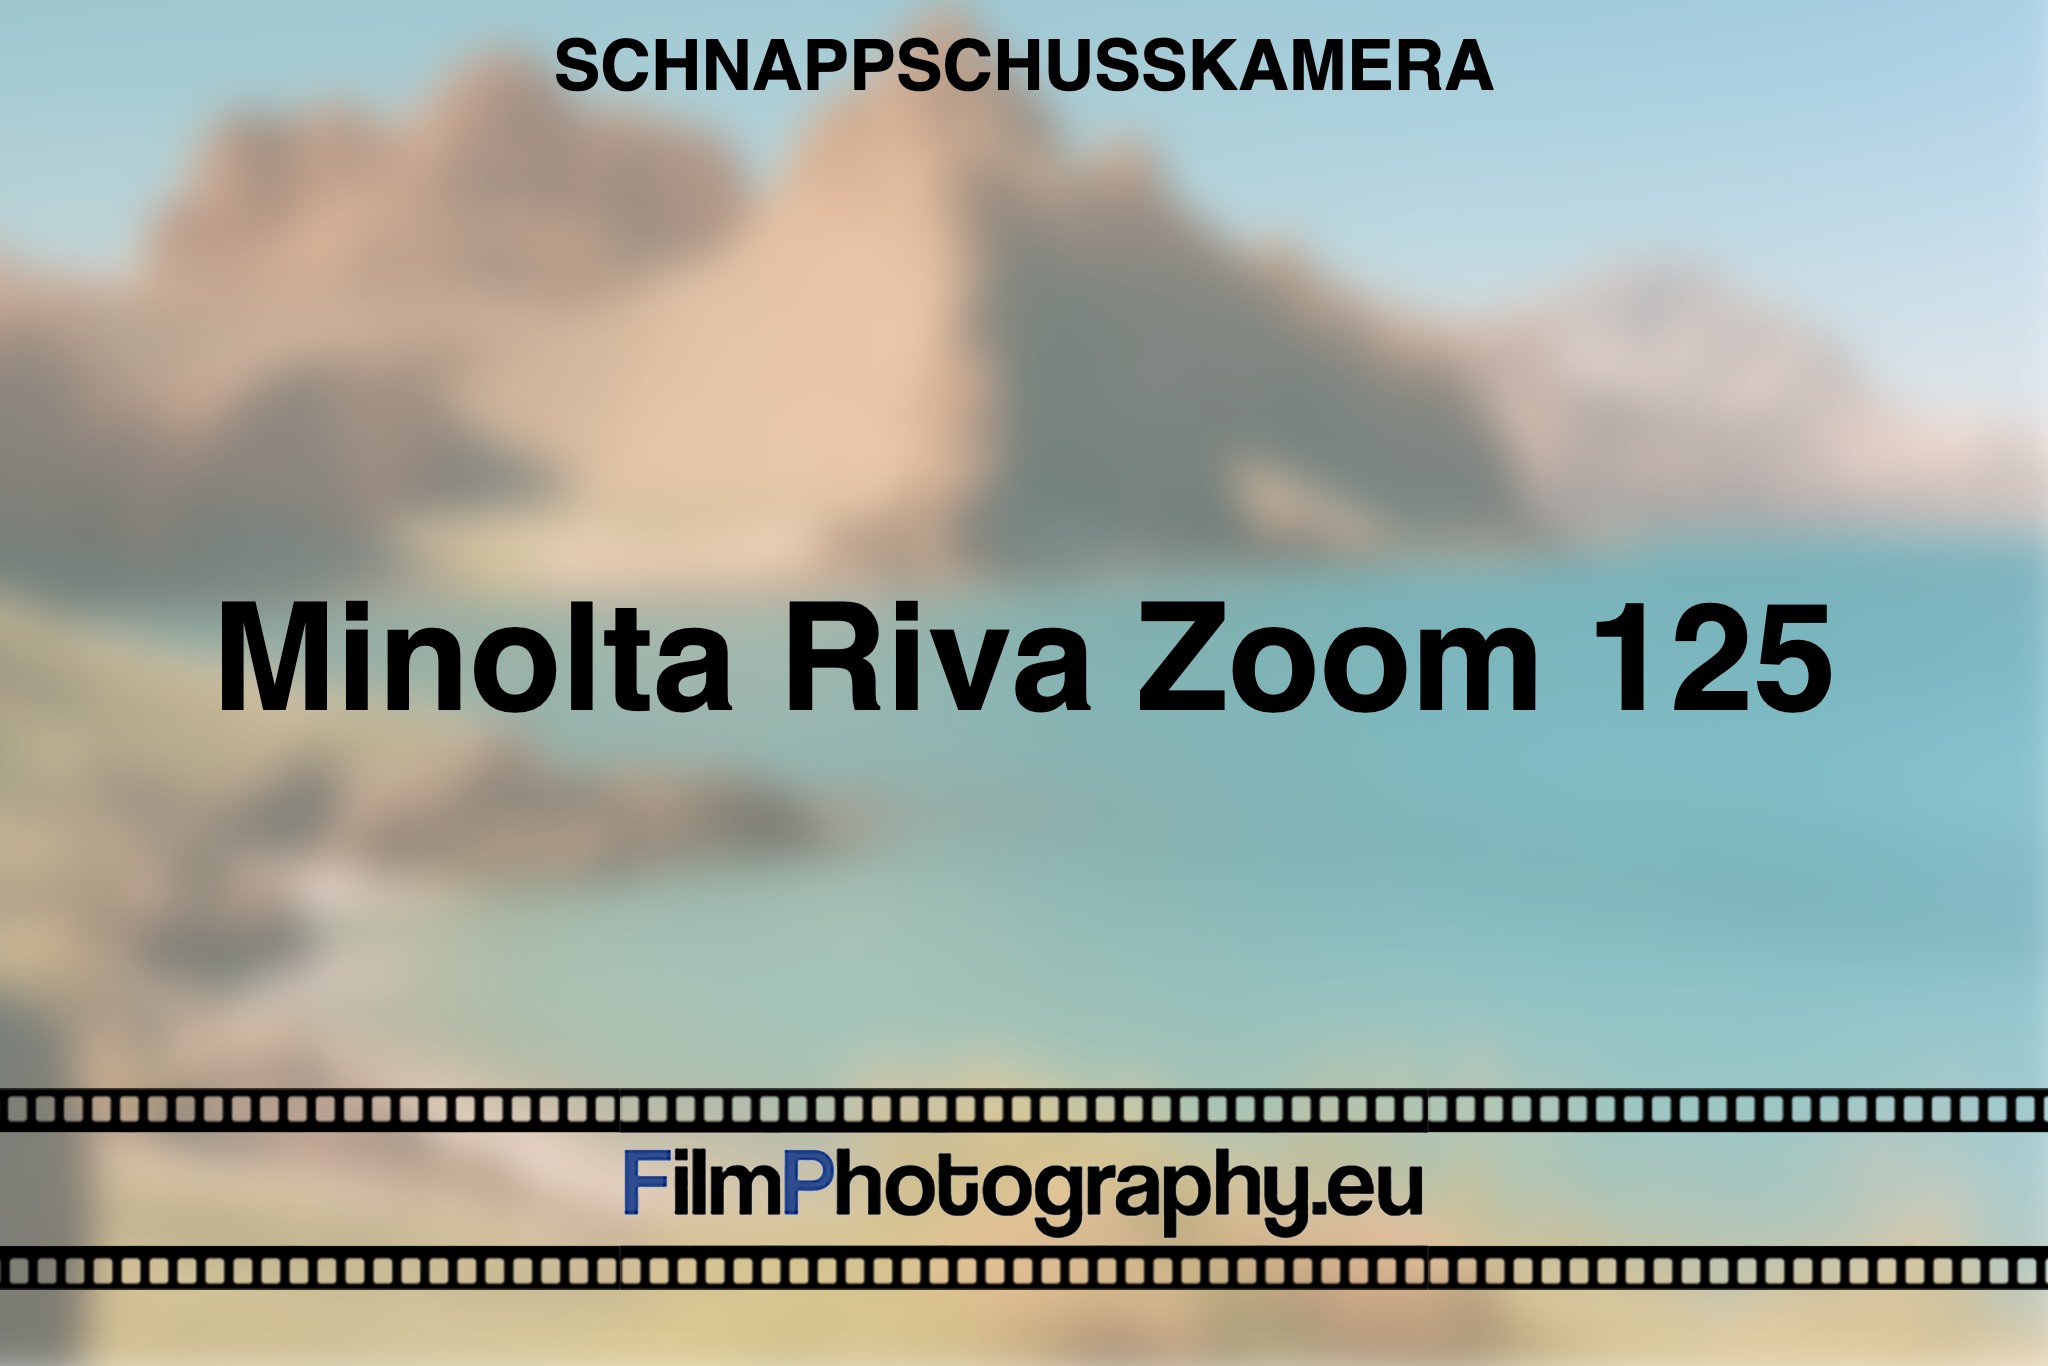 minolta-riva-zoom-125-schnappschusskamera-bnv